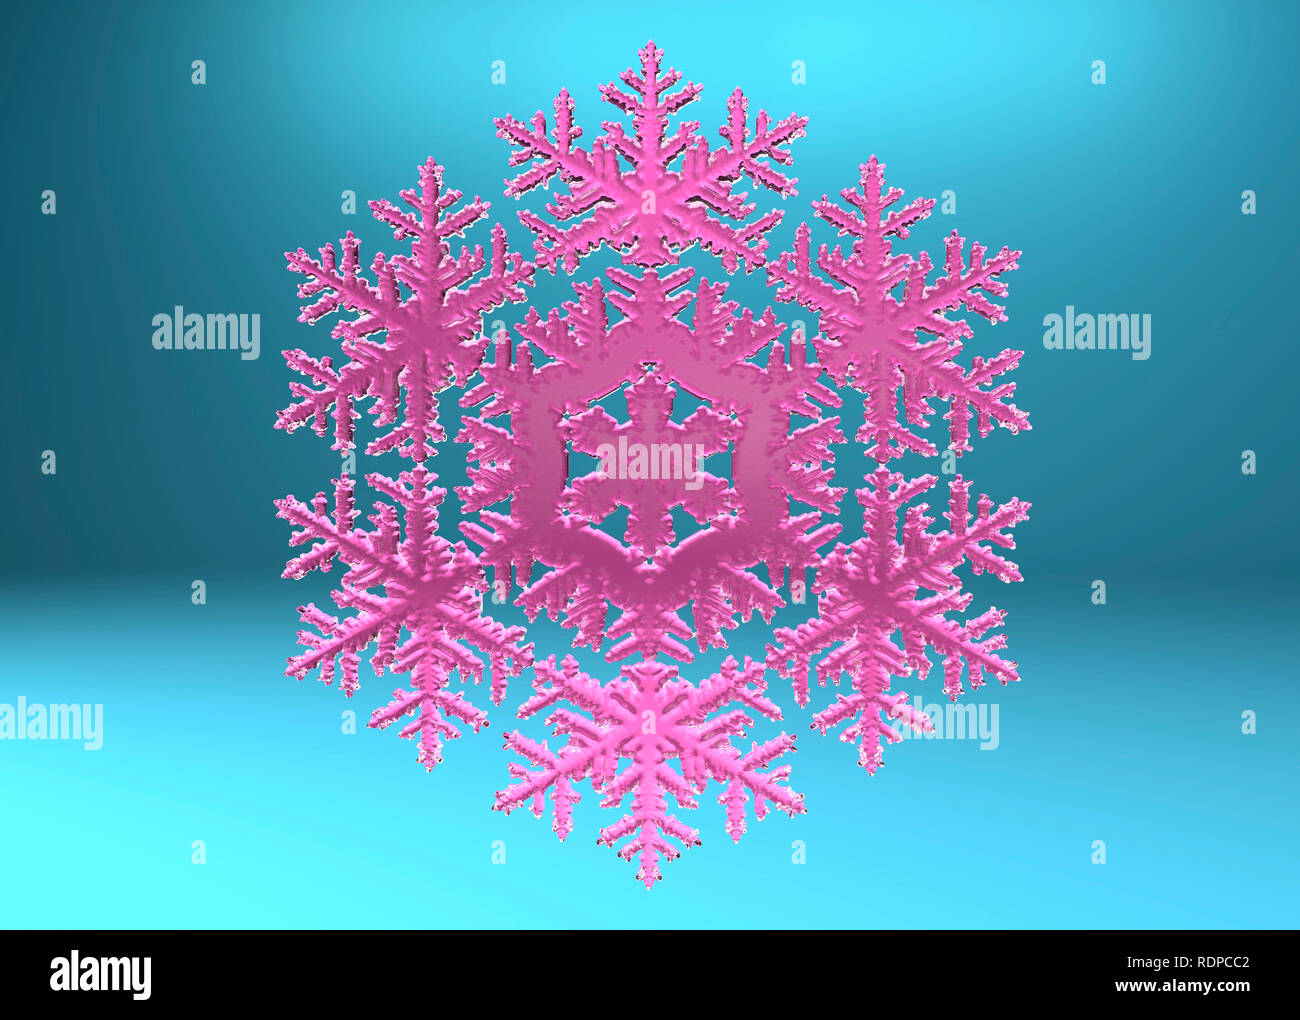 Pink Snowflake contra un fondo azul, la ilustración. Foto de stock